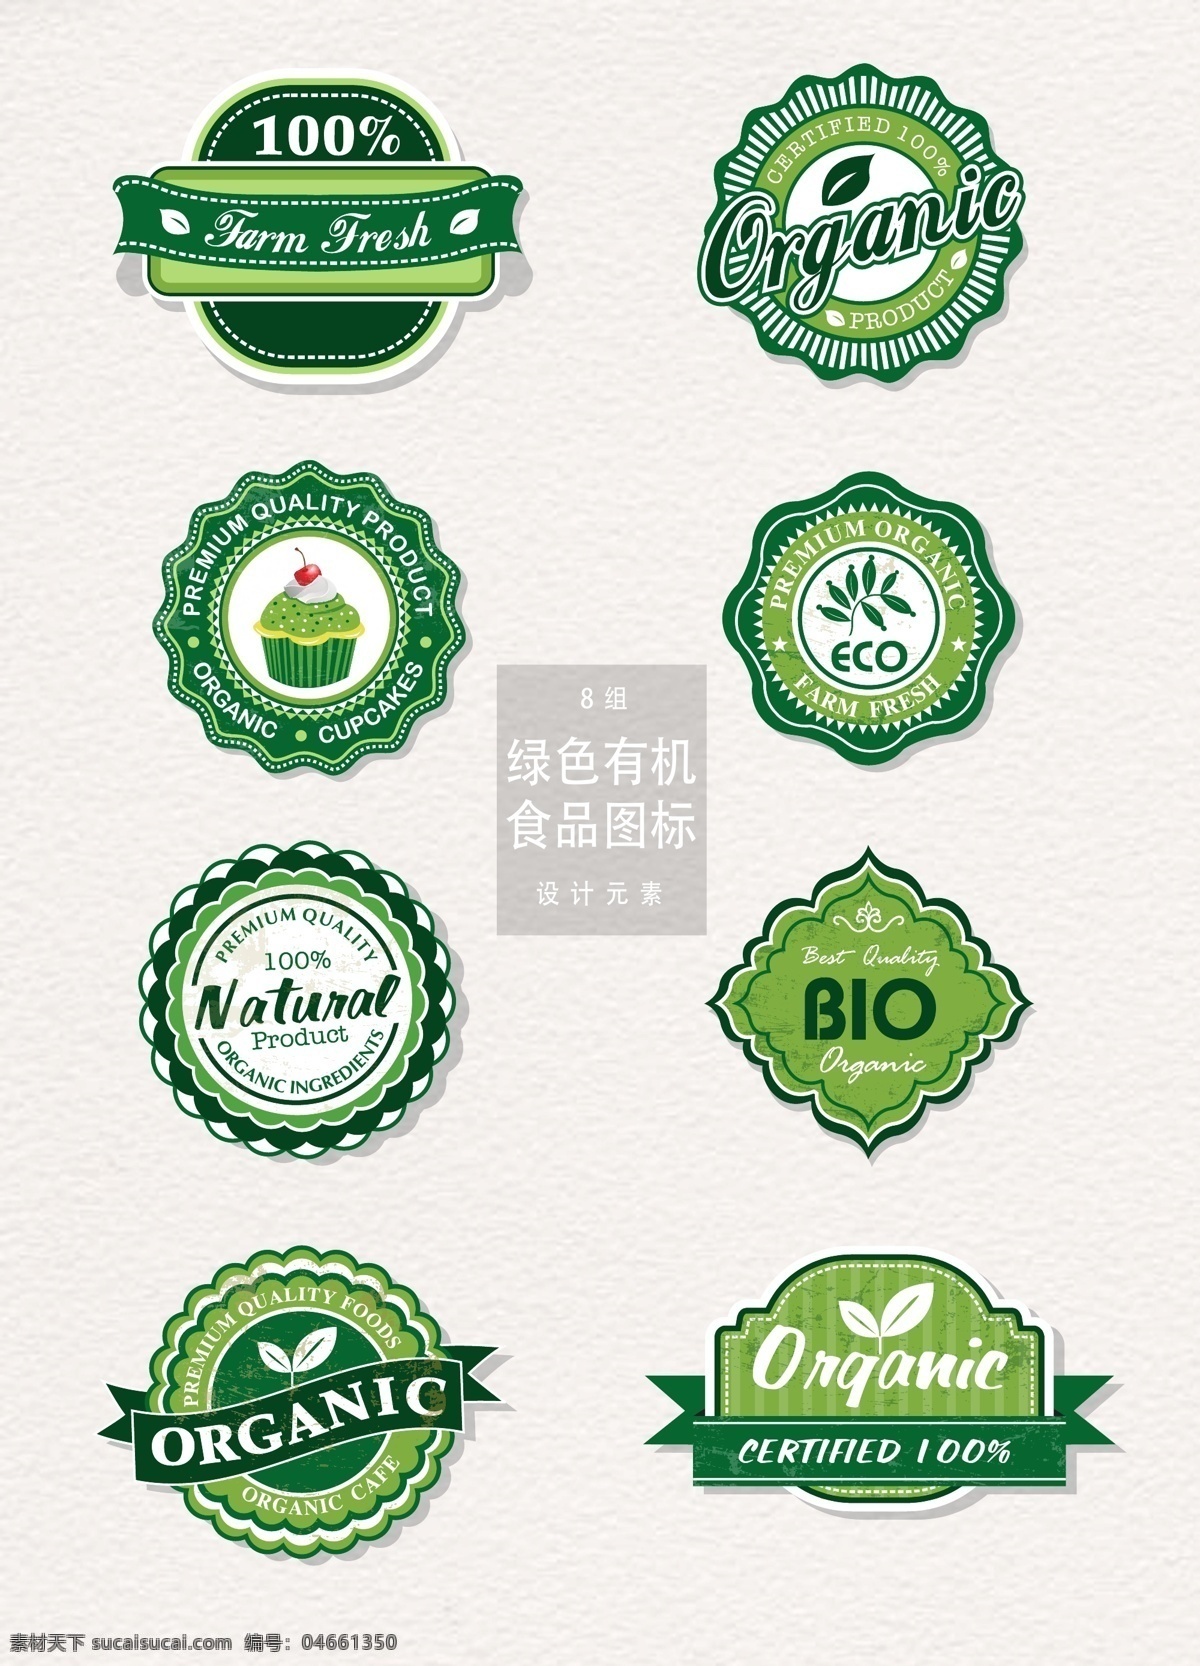 有机 天然 绿色食品 图标 ai素材 图标设计 矢量素材 绿色食品图标 logo 有机天然